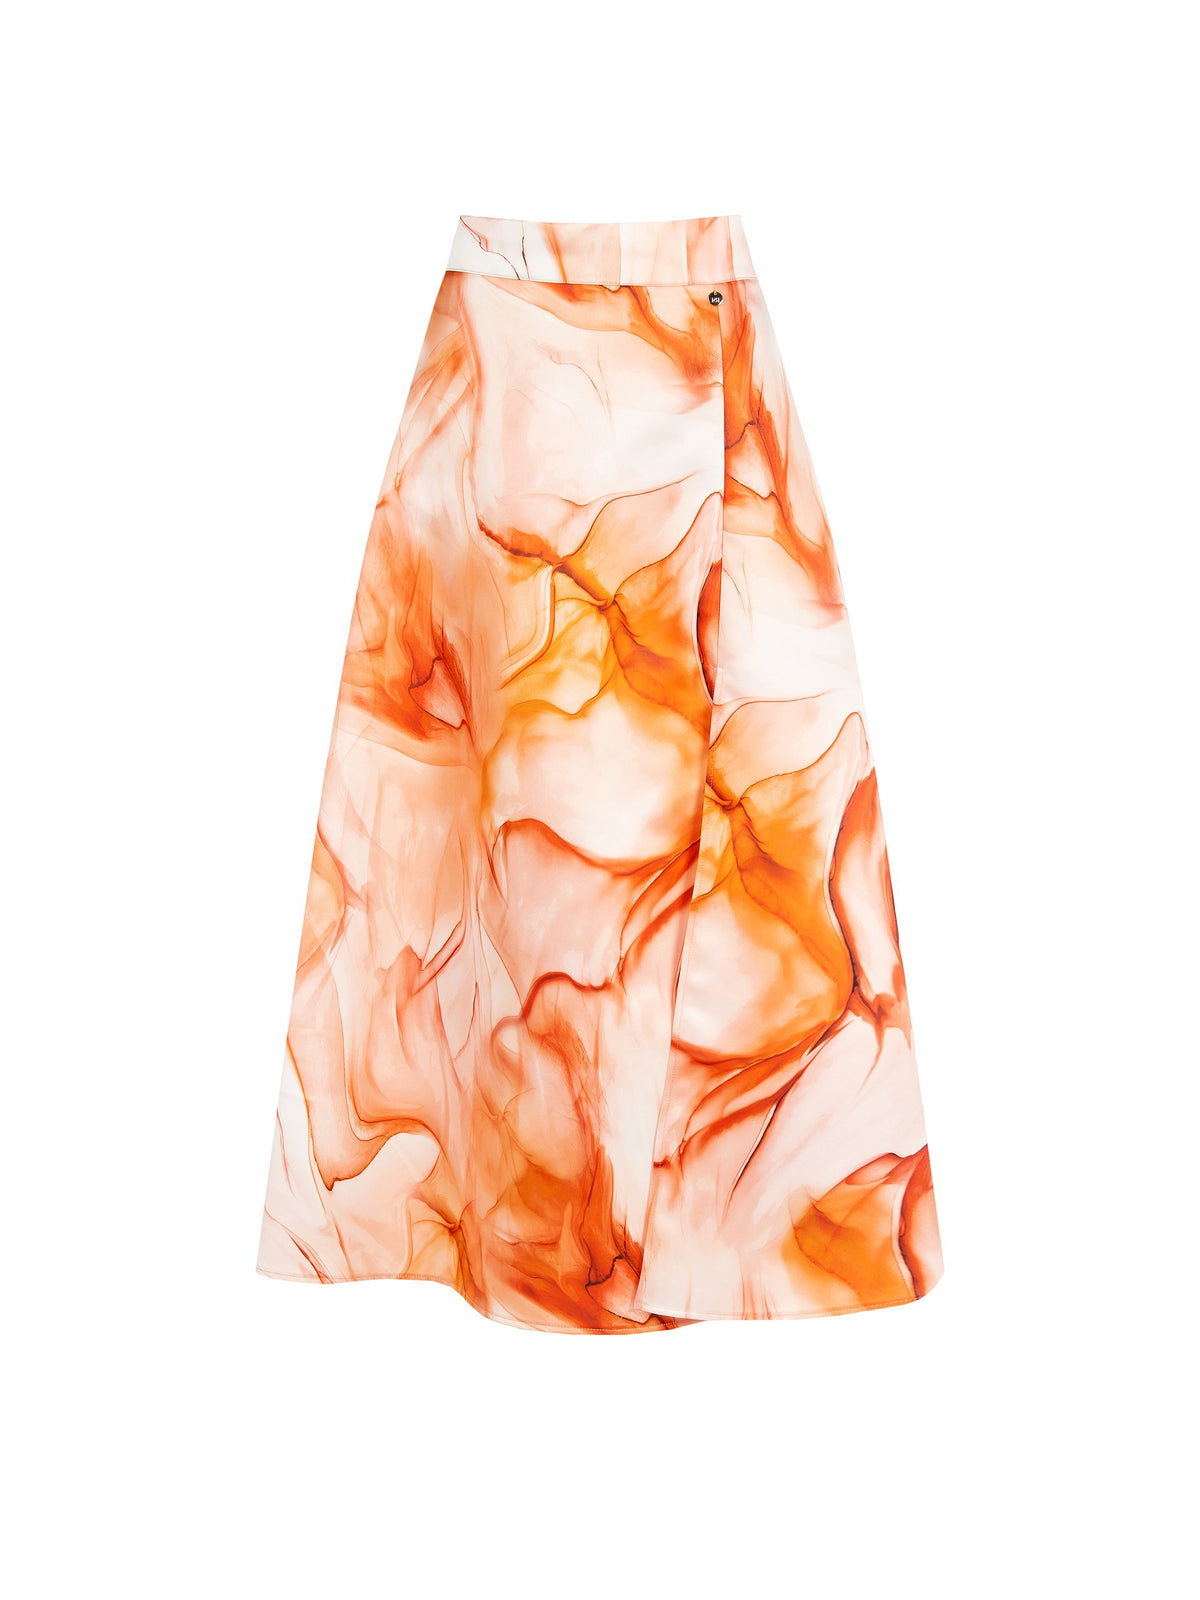 Marble Print Skirt